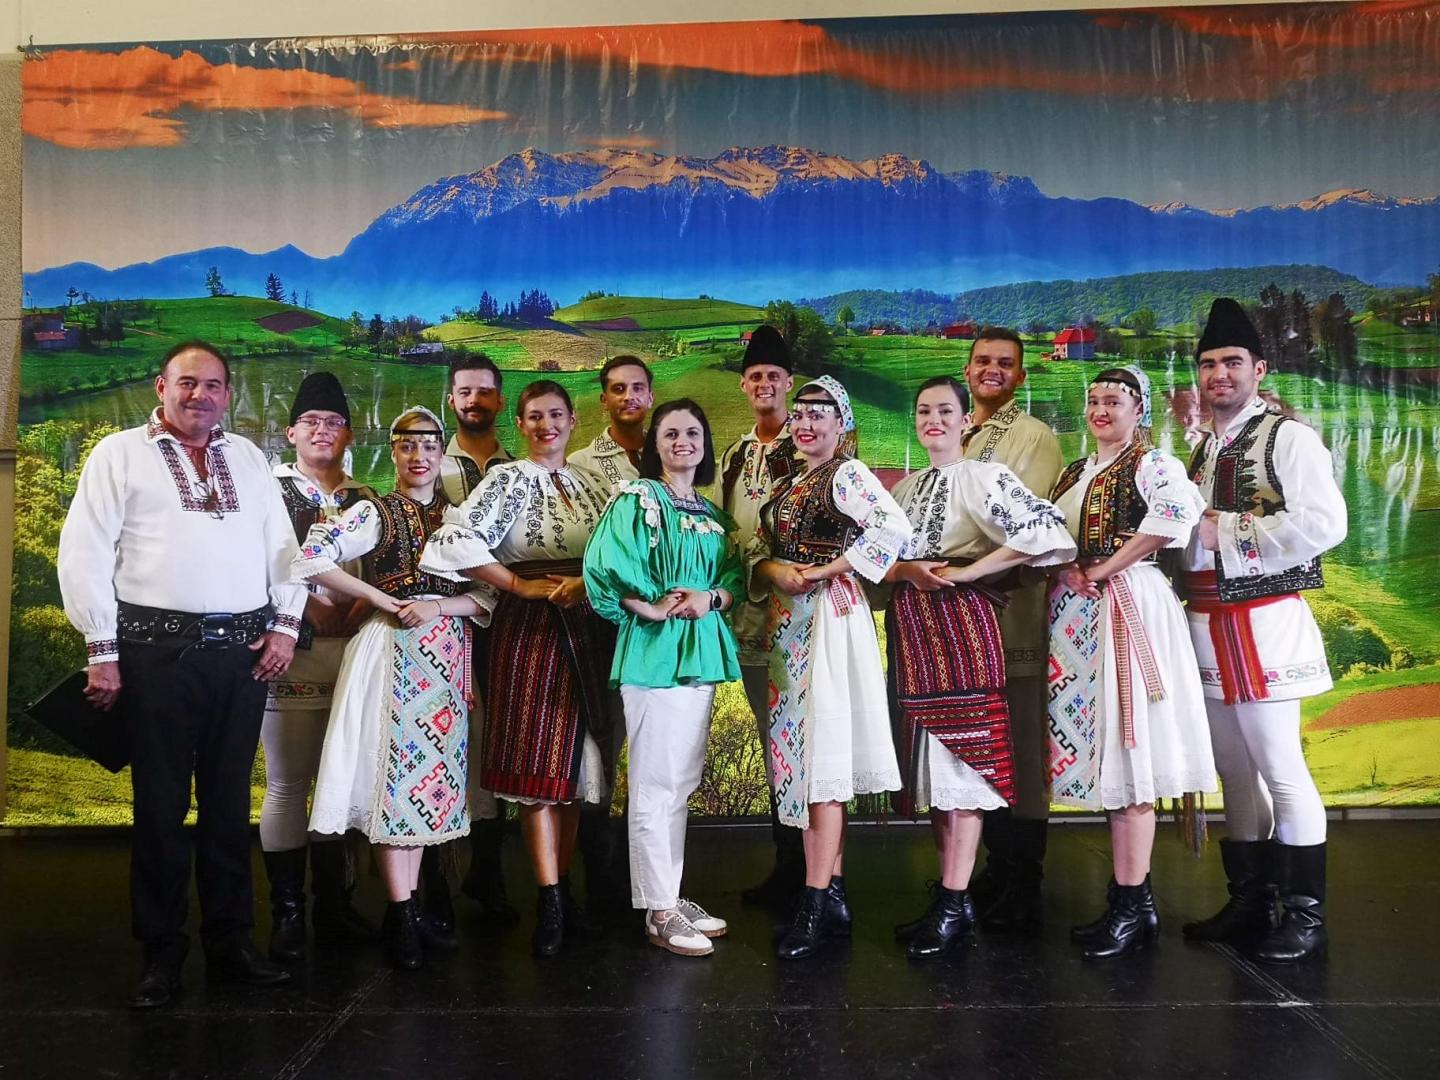 Ansamblul Folcloric „Românașul” al UTCN a reprezentat România la festivalul internațional multicultural Folklorama din Canada